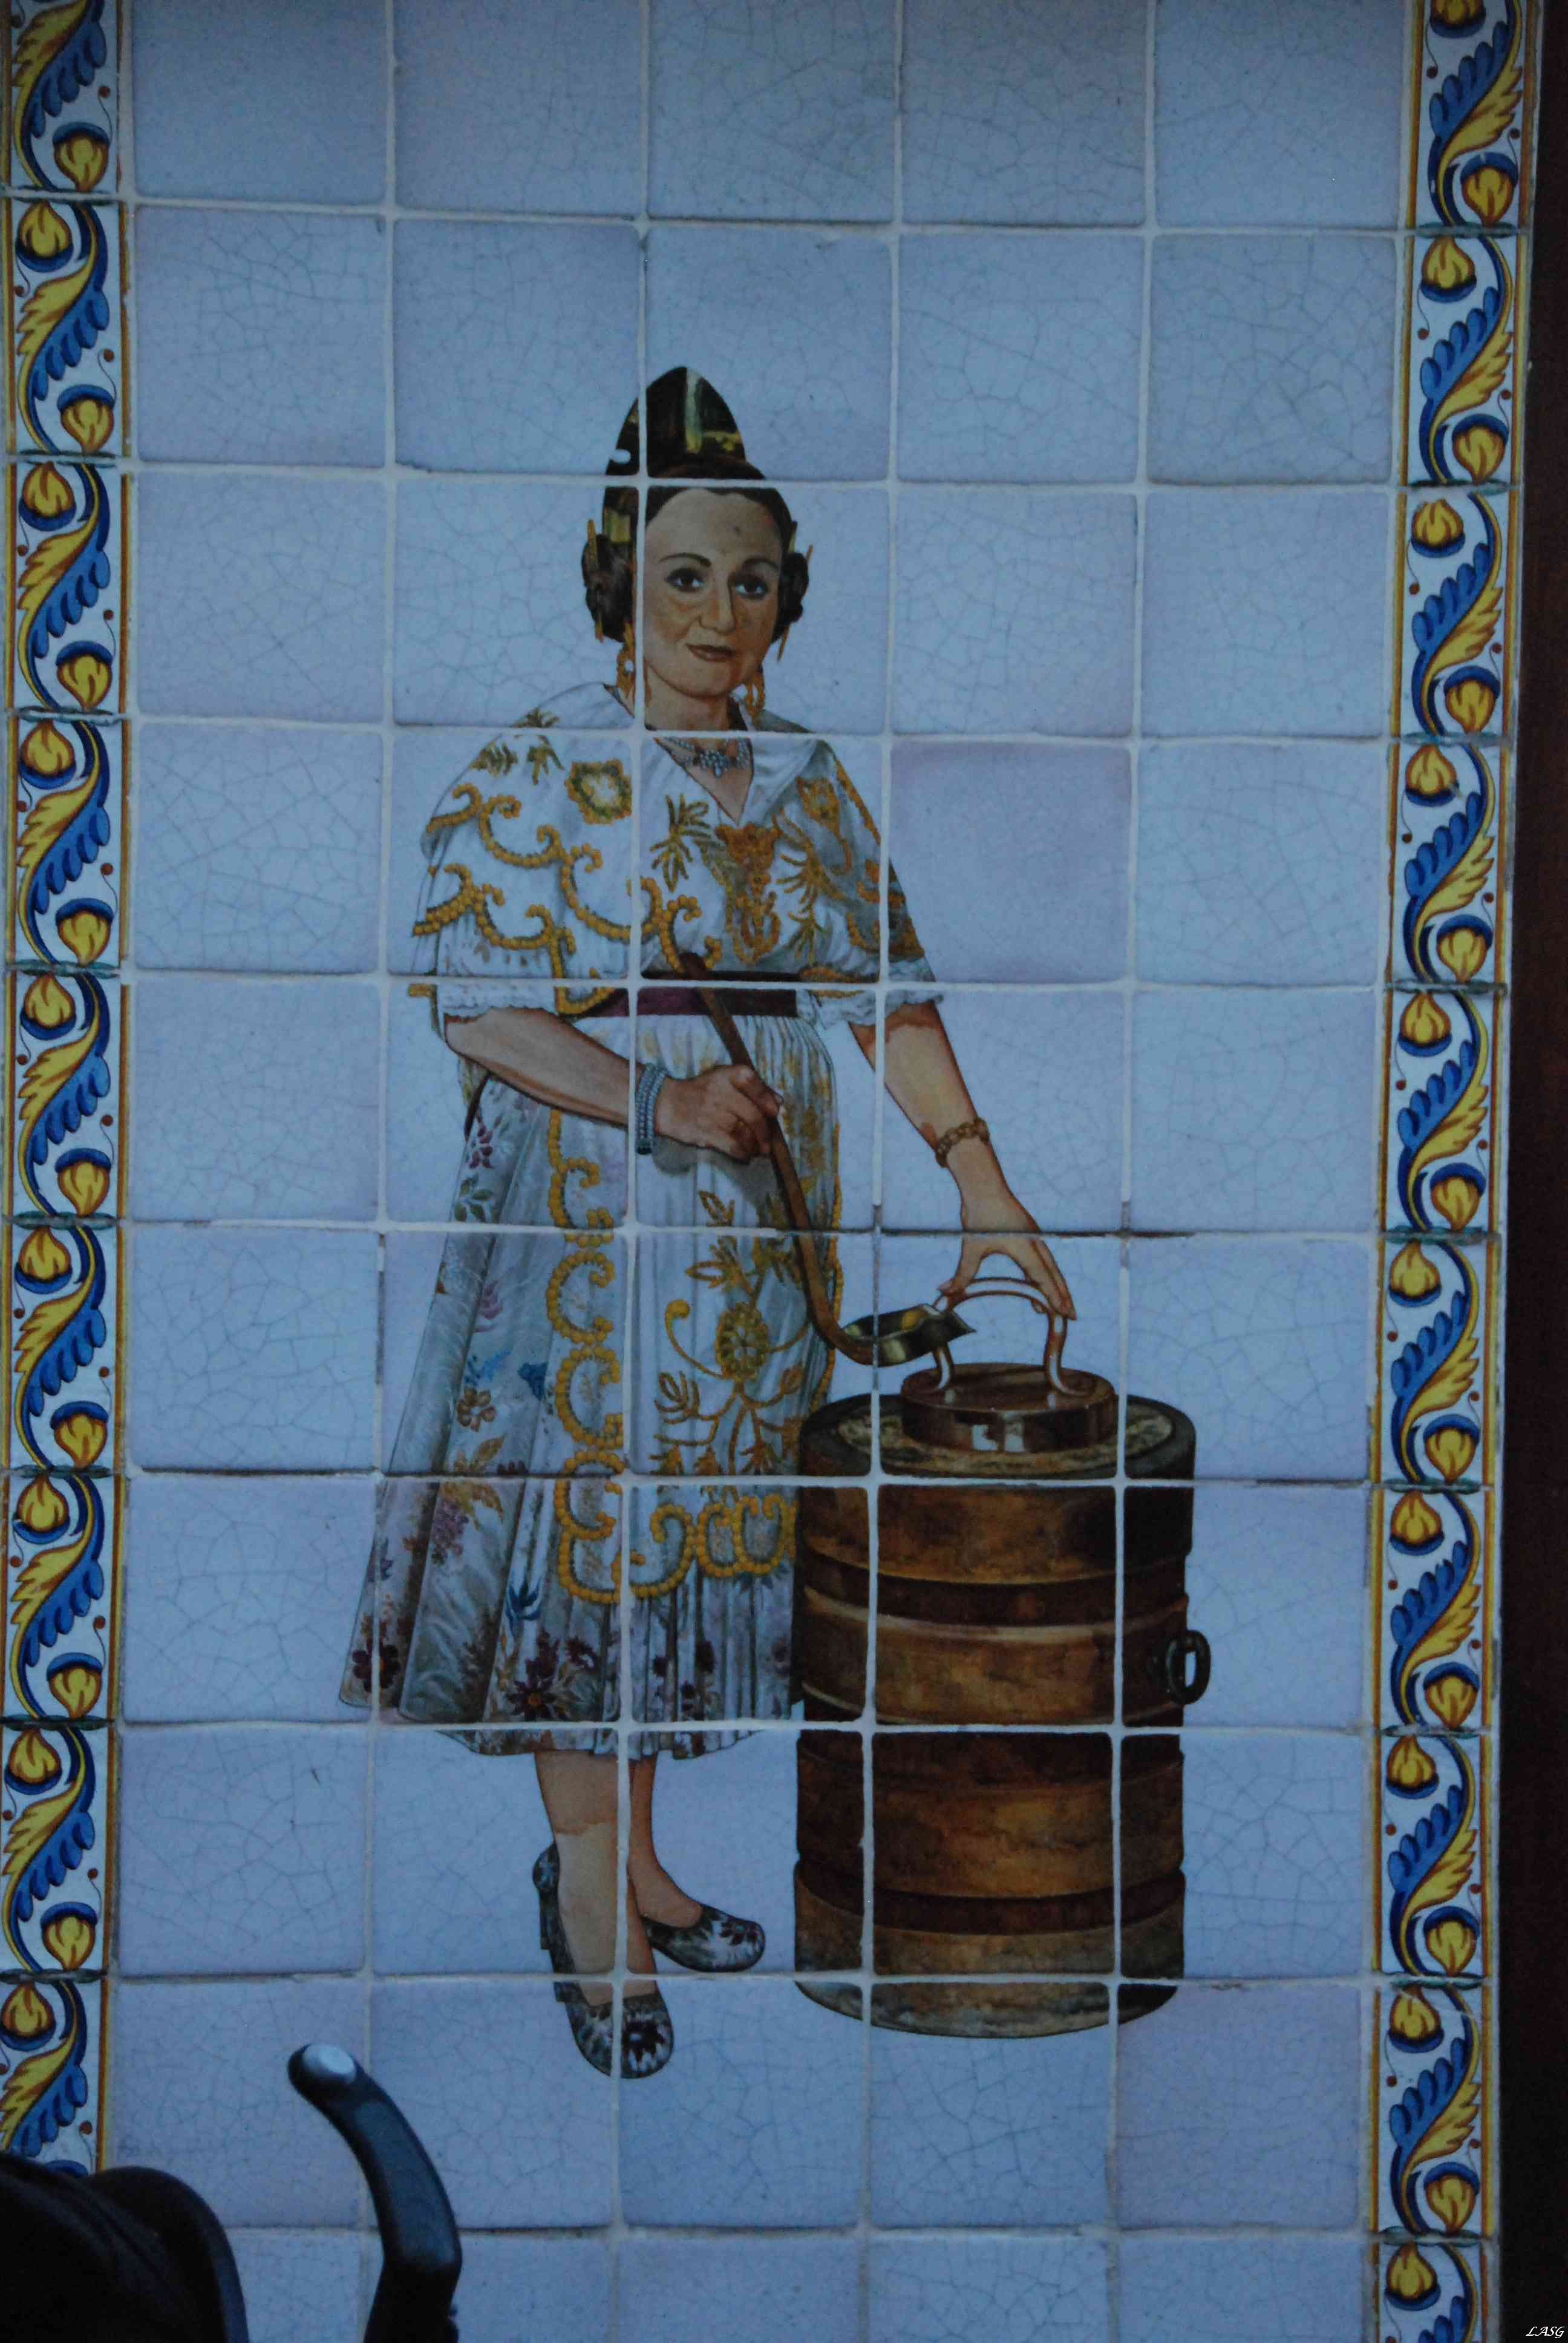 A horchata azulejo reklámja a falon, itt joghurtoztunk